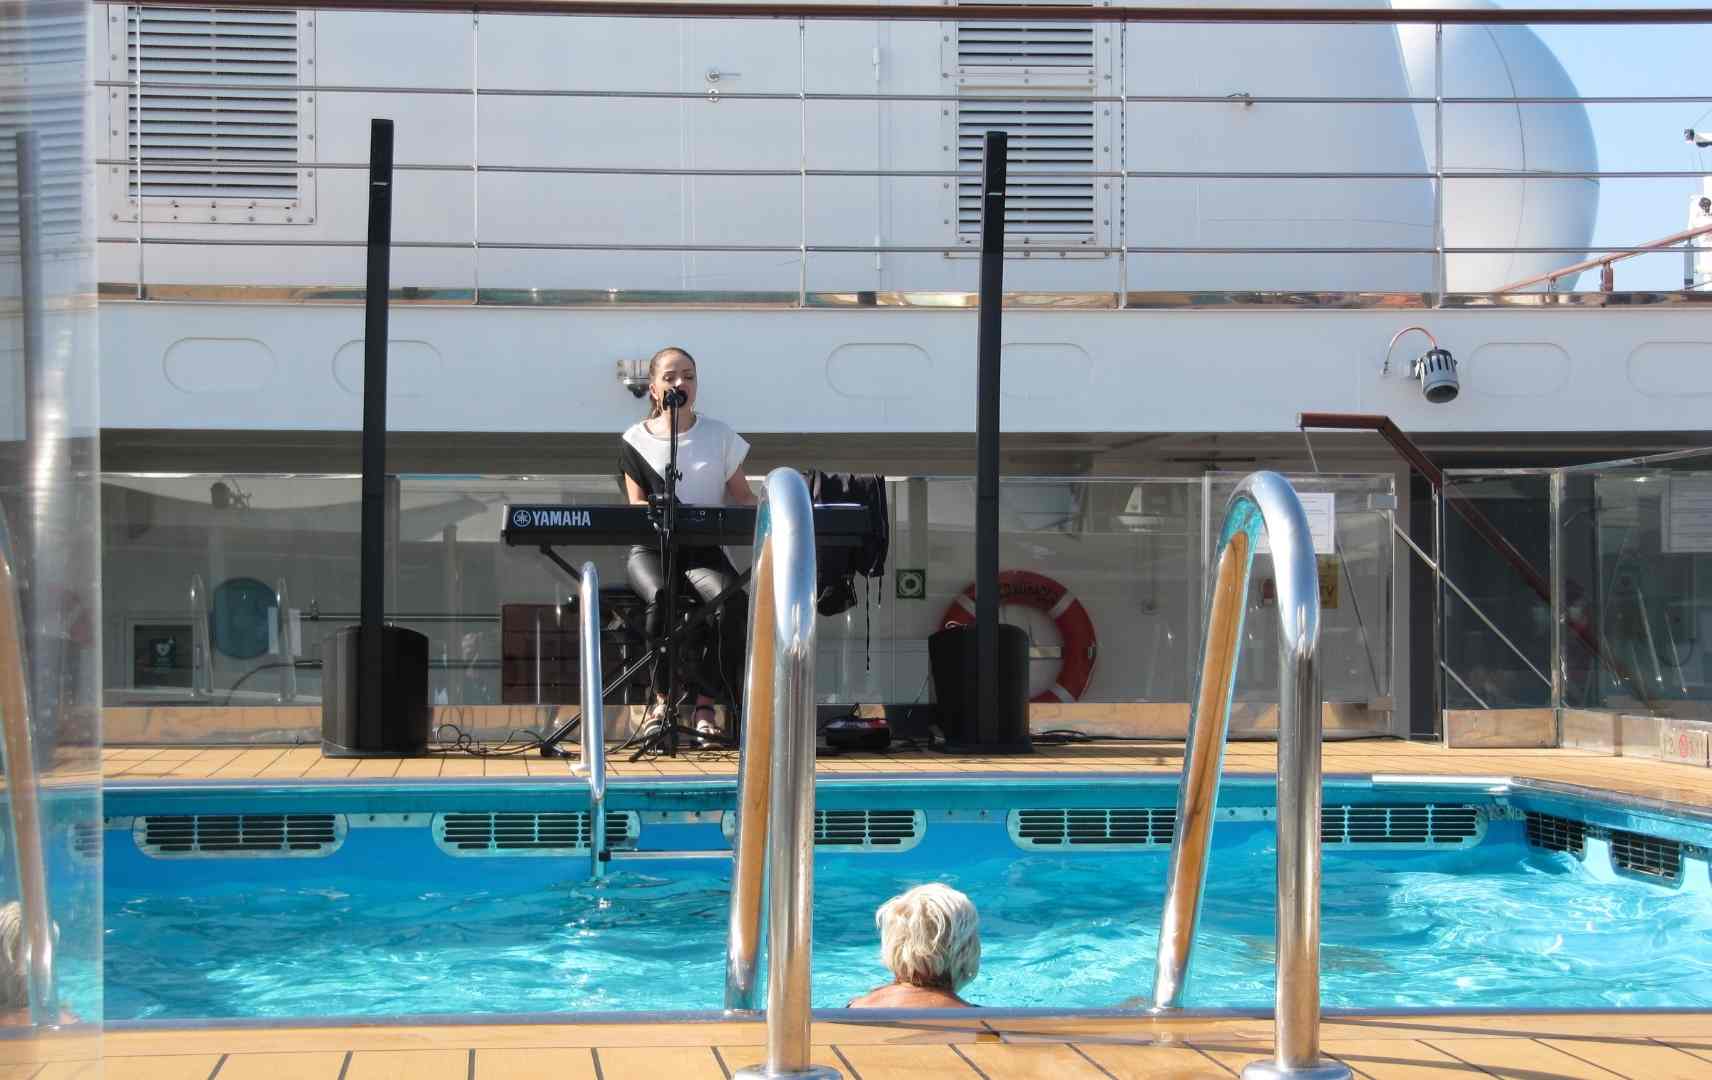 Musik hören beim Schwimmen auf dem Pooldeck